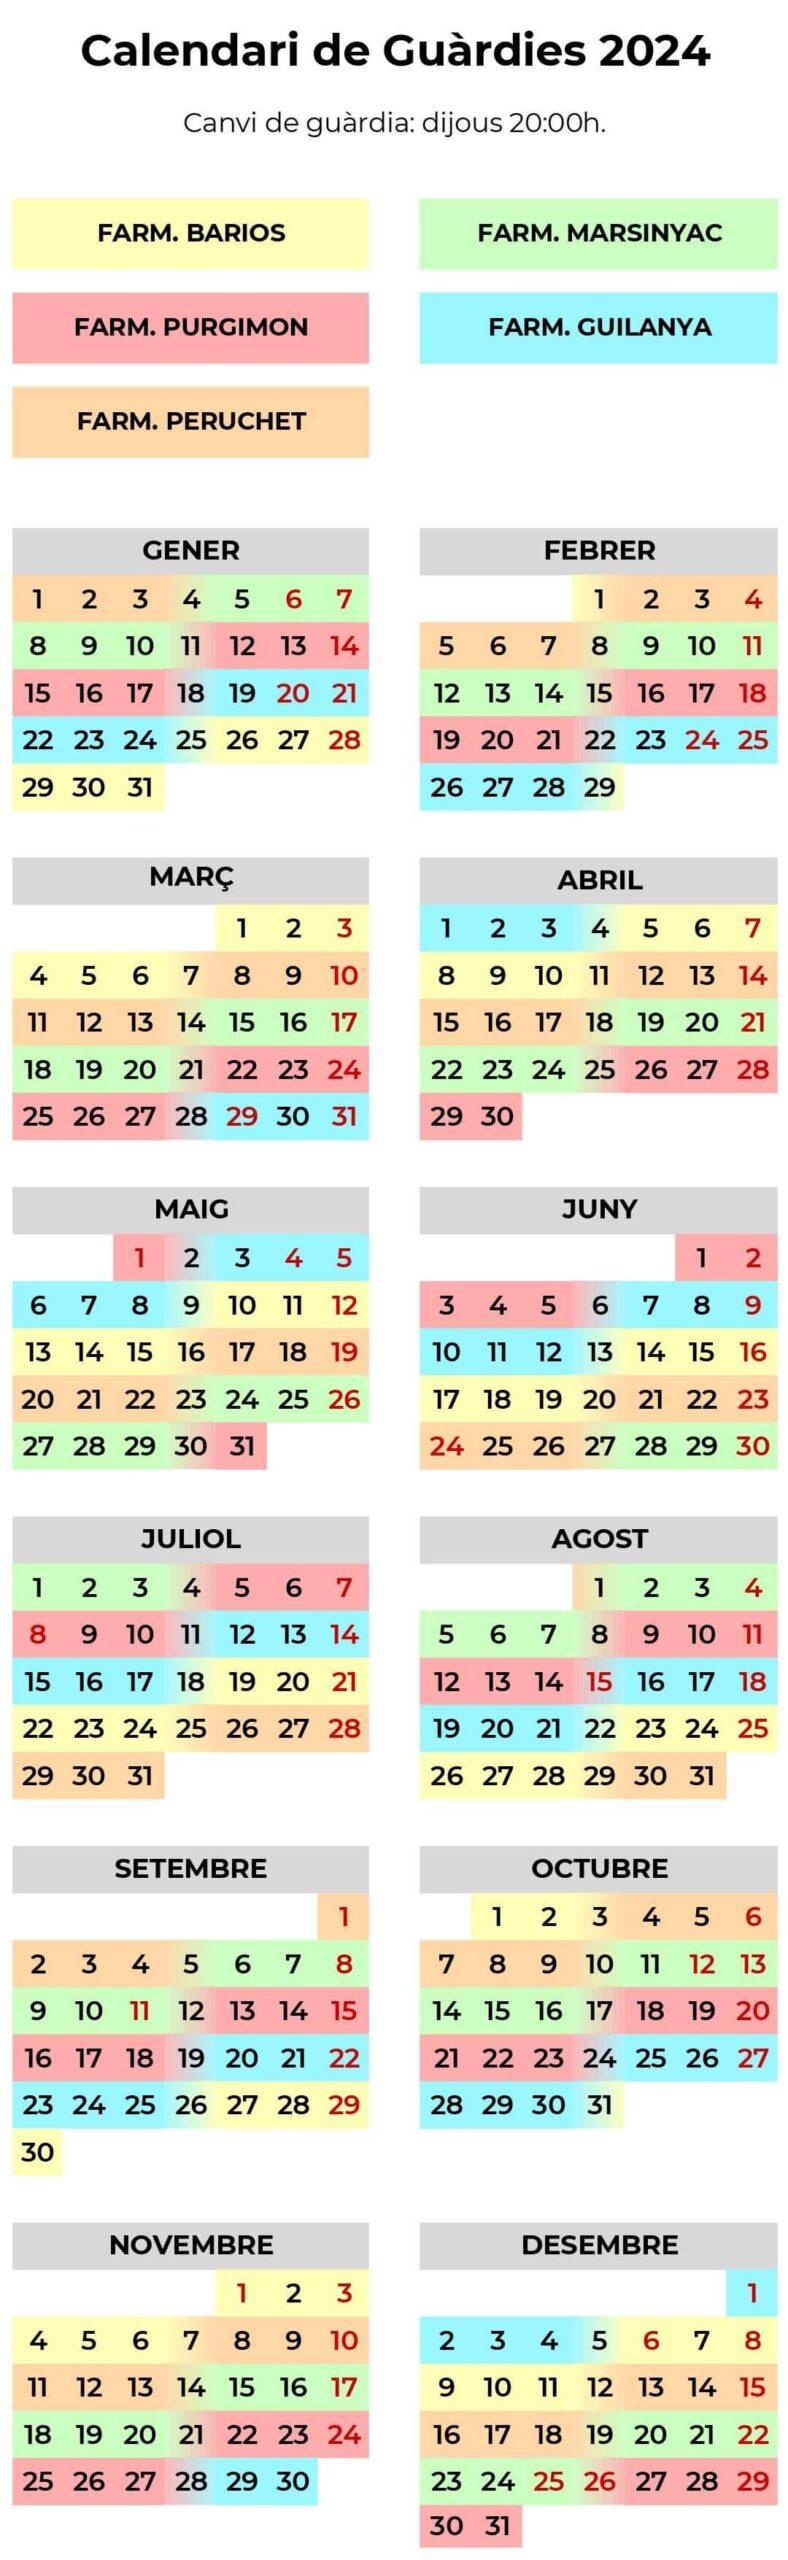 Calendari de Guàrdies 2024